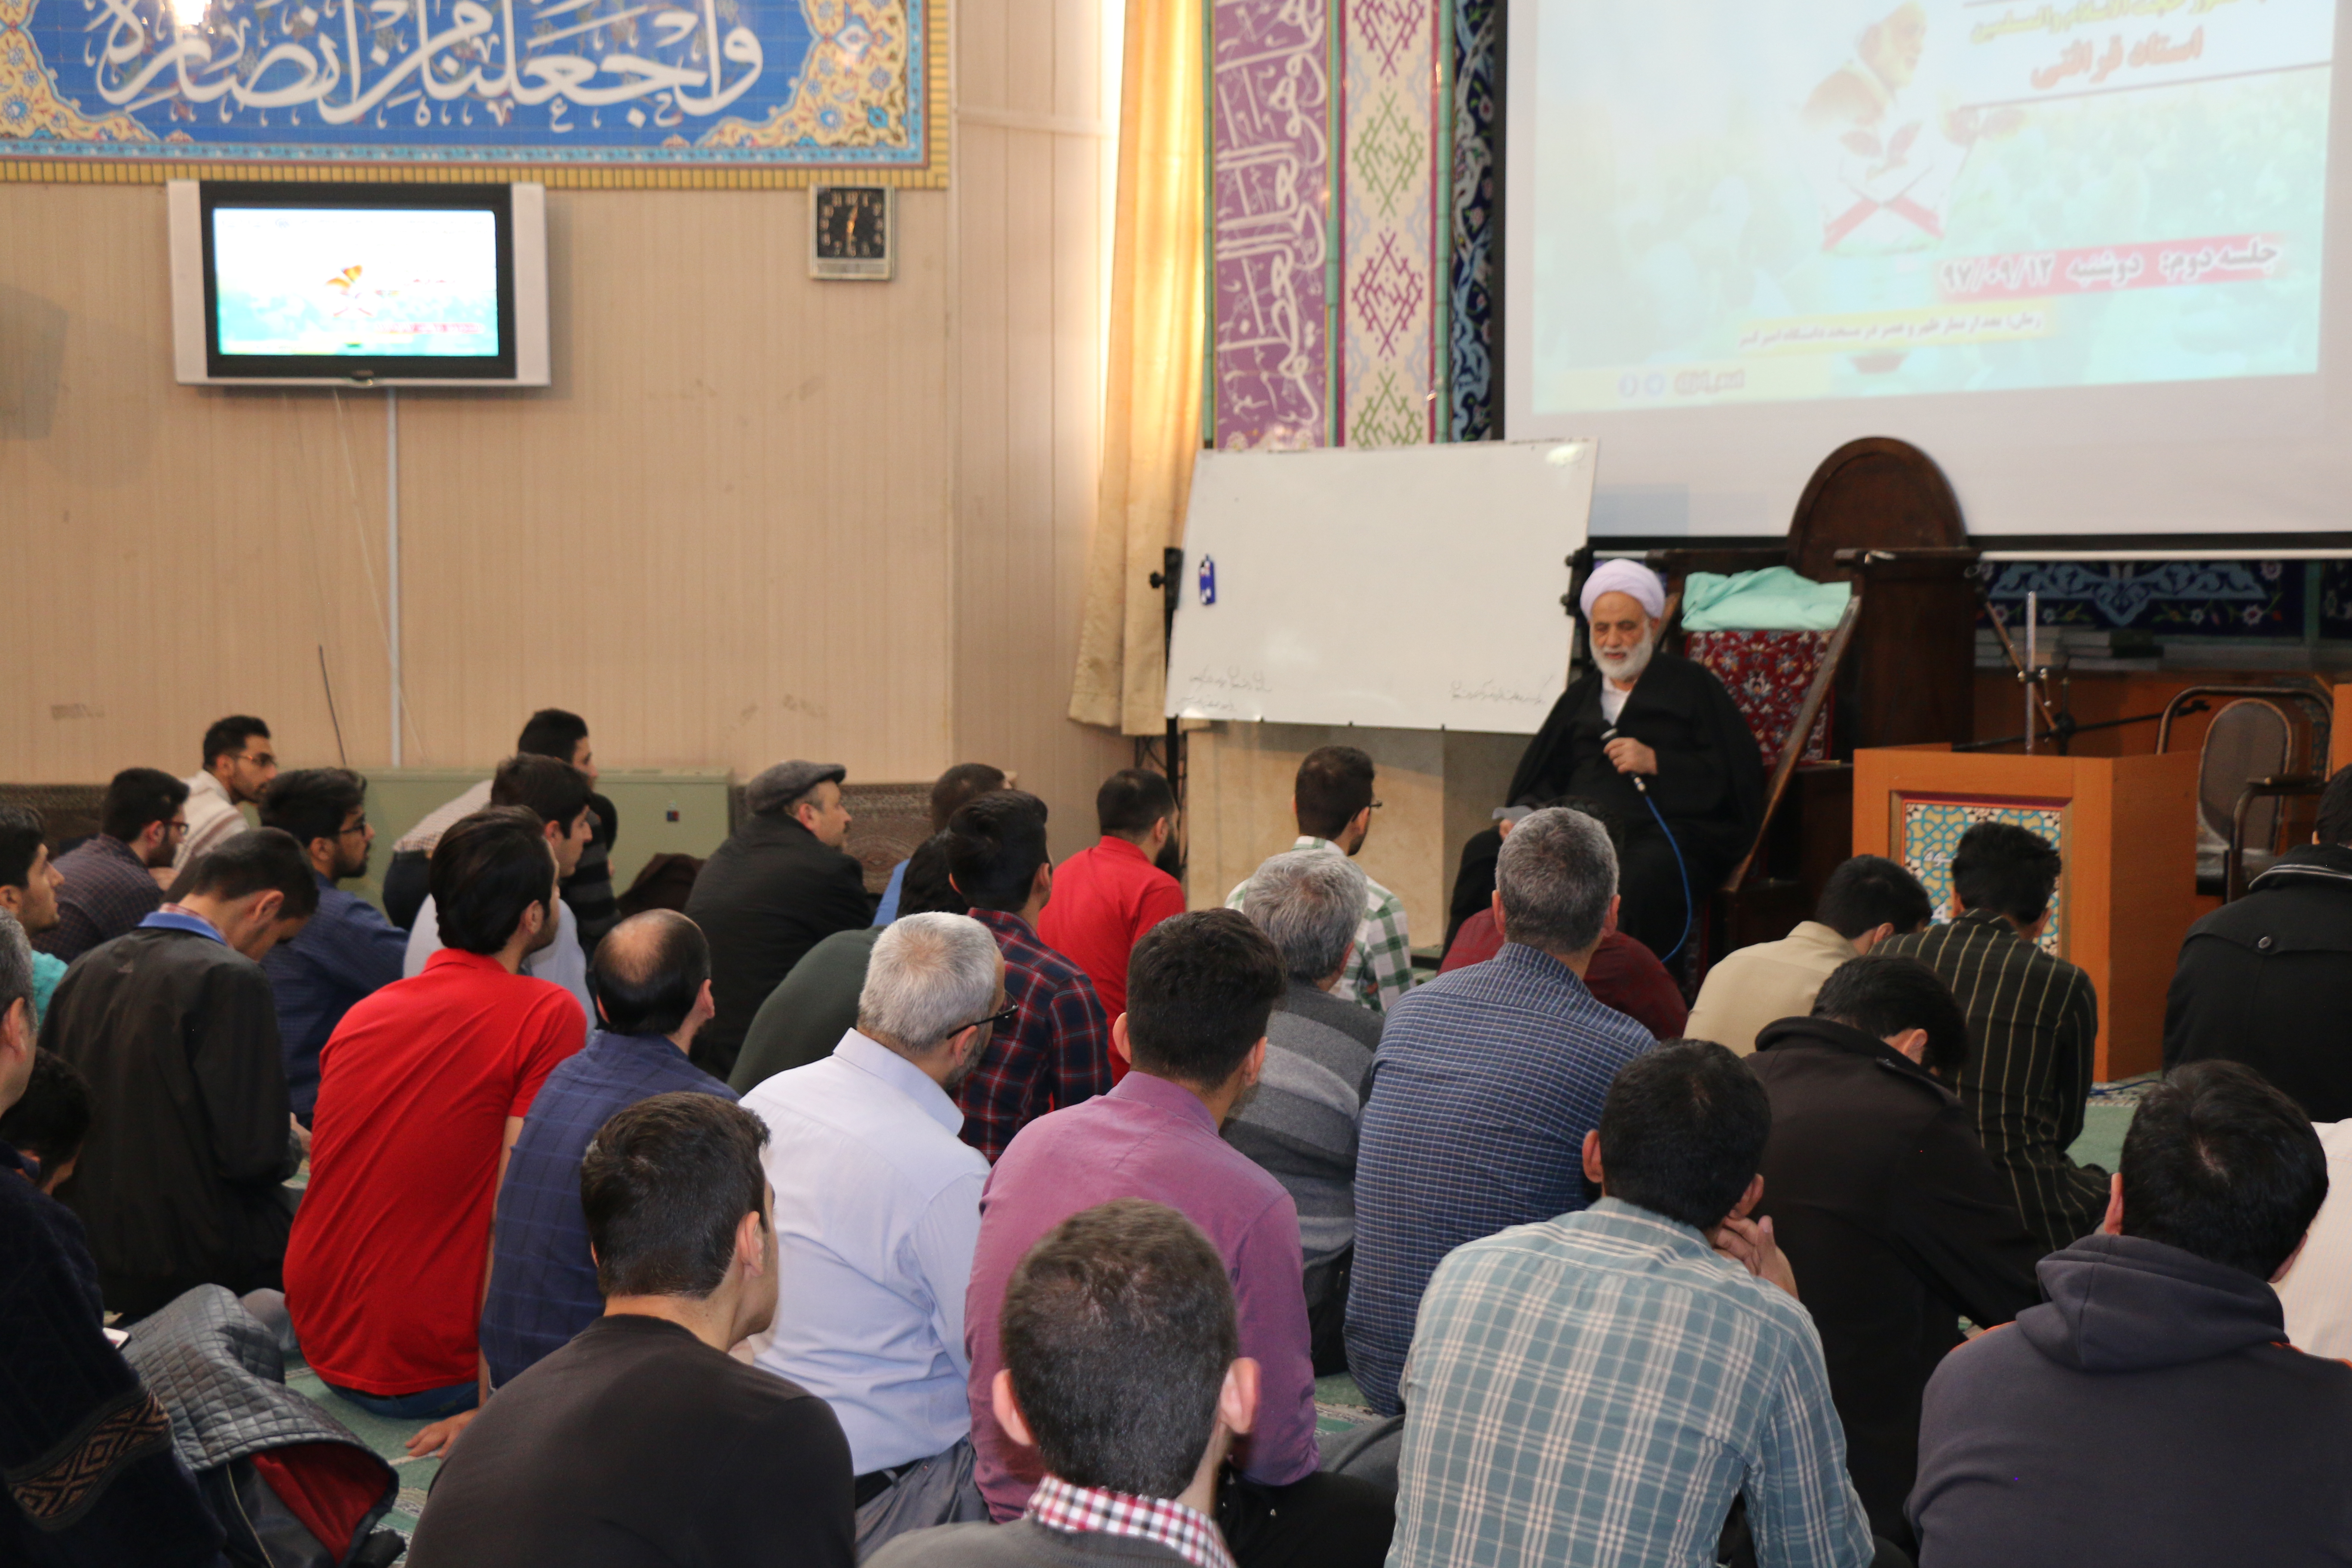 جلسه دوم تدبر در قرآن با حضور استاد قرائتی در دانشگاه امیرکبیر